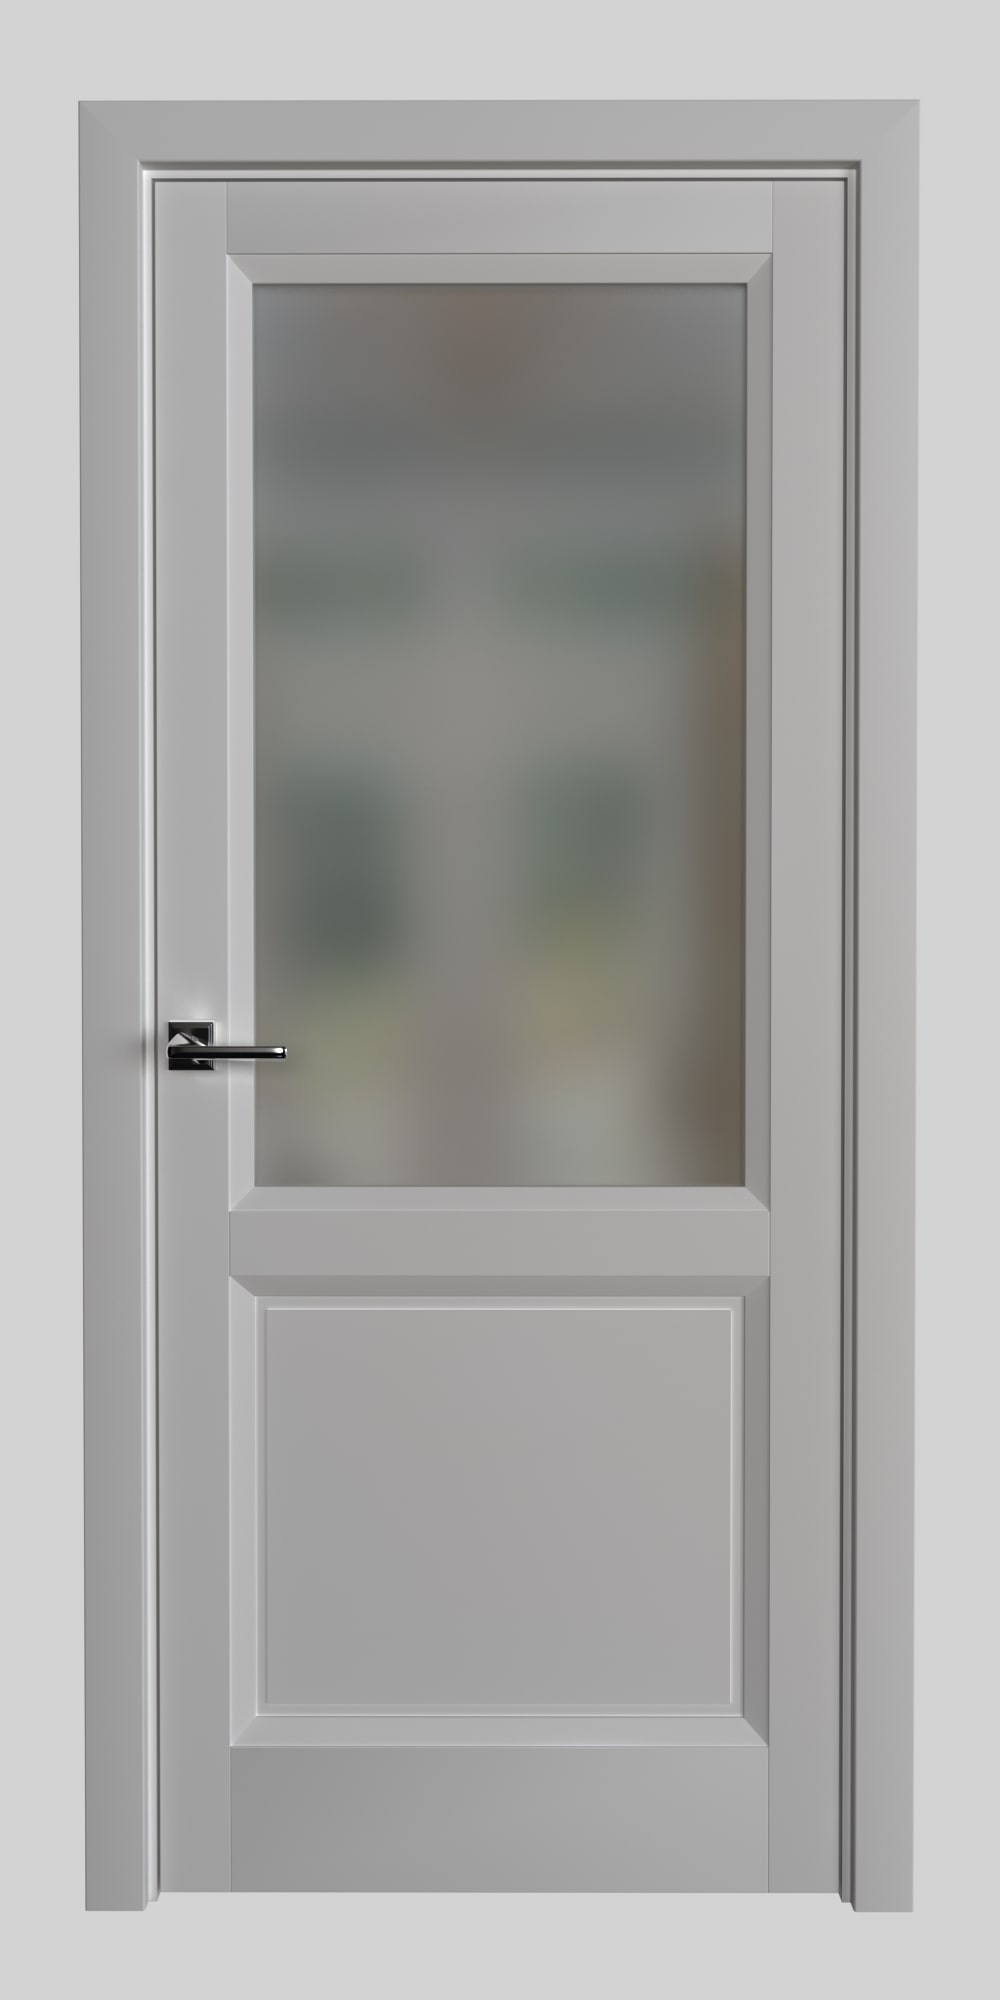 Дверь со вставкой стекла и исполнении в европейском стиле